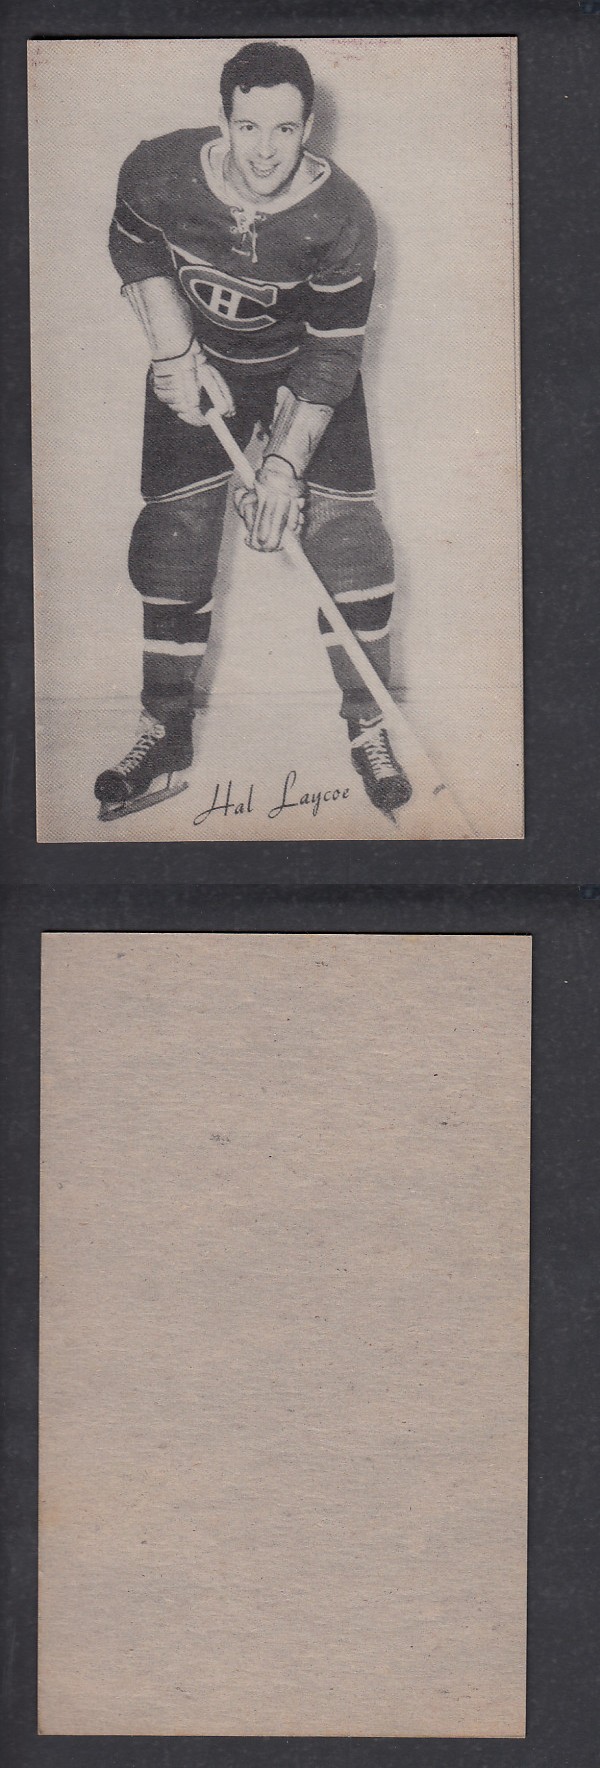 1948-52 EXHIBITS HOCKEY CARD H. LAYCOE photo